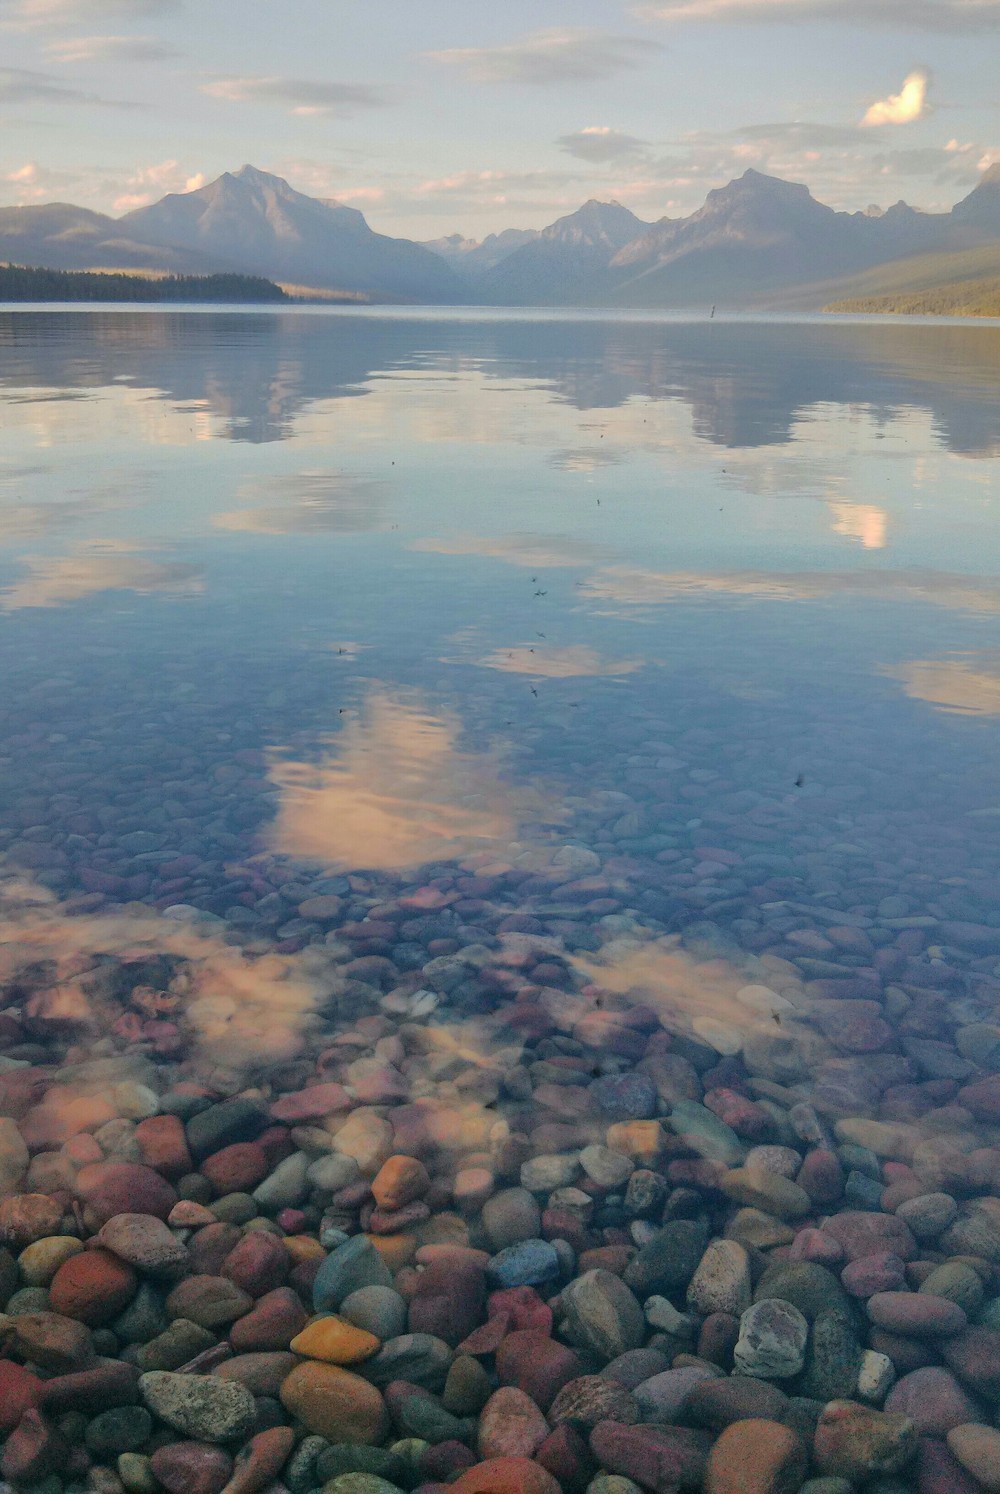 Lake McDonald, Montana - A rock, Lake, beauty, Longpost